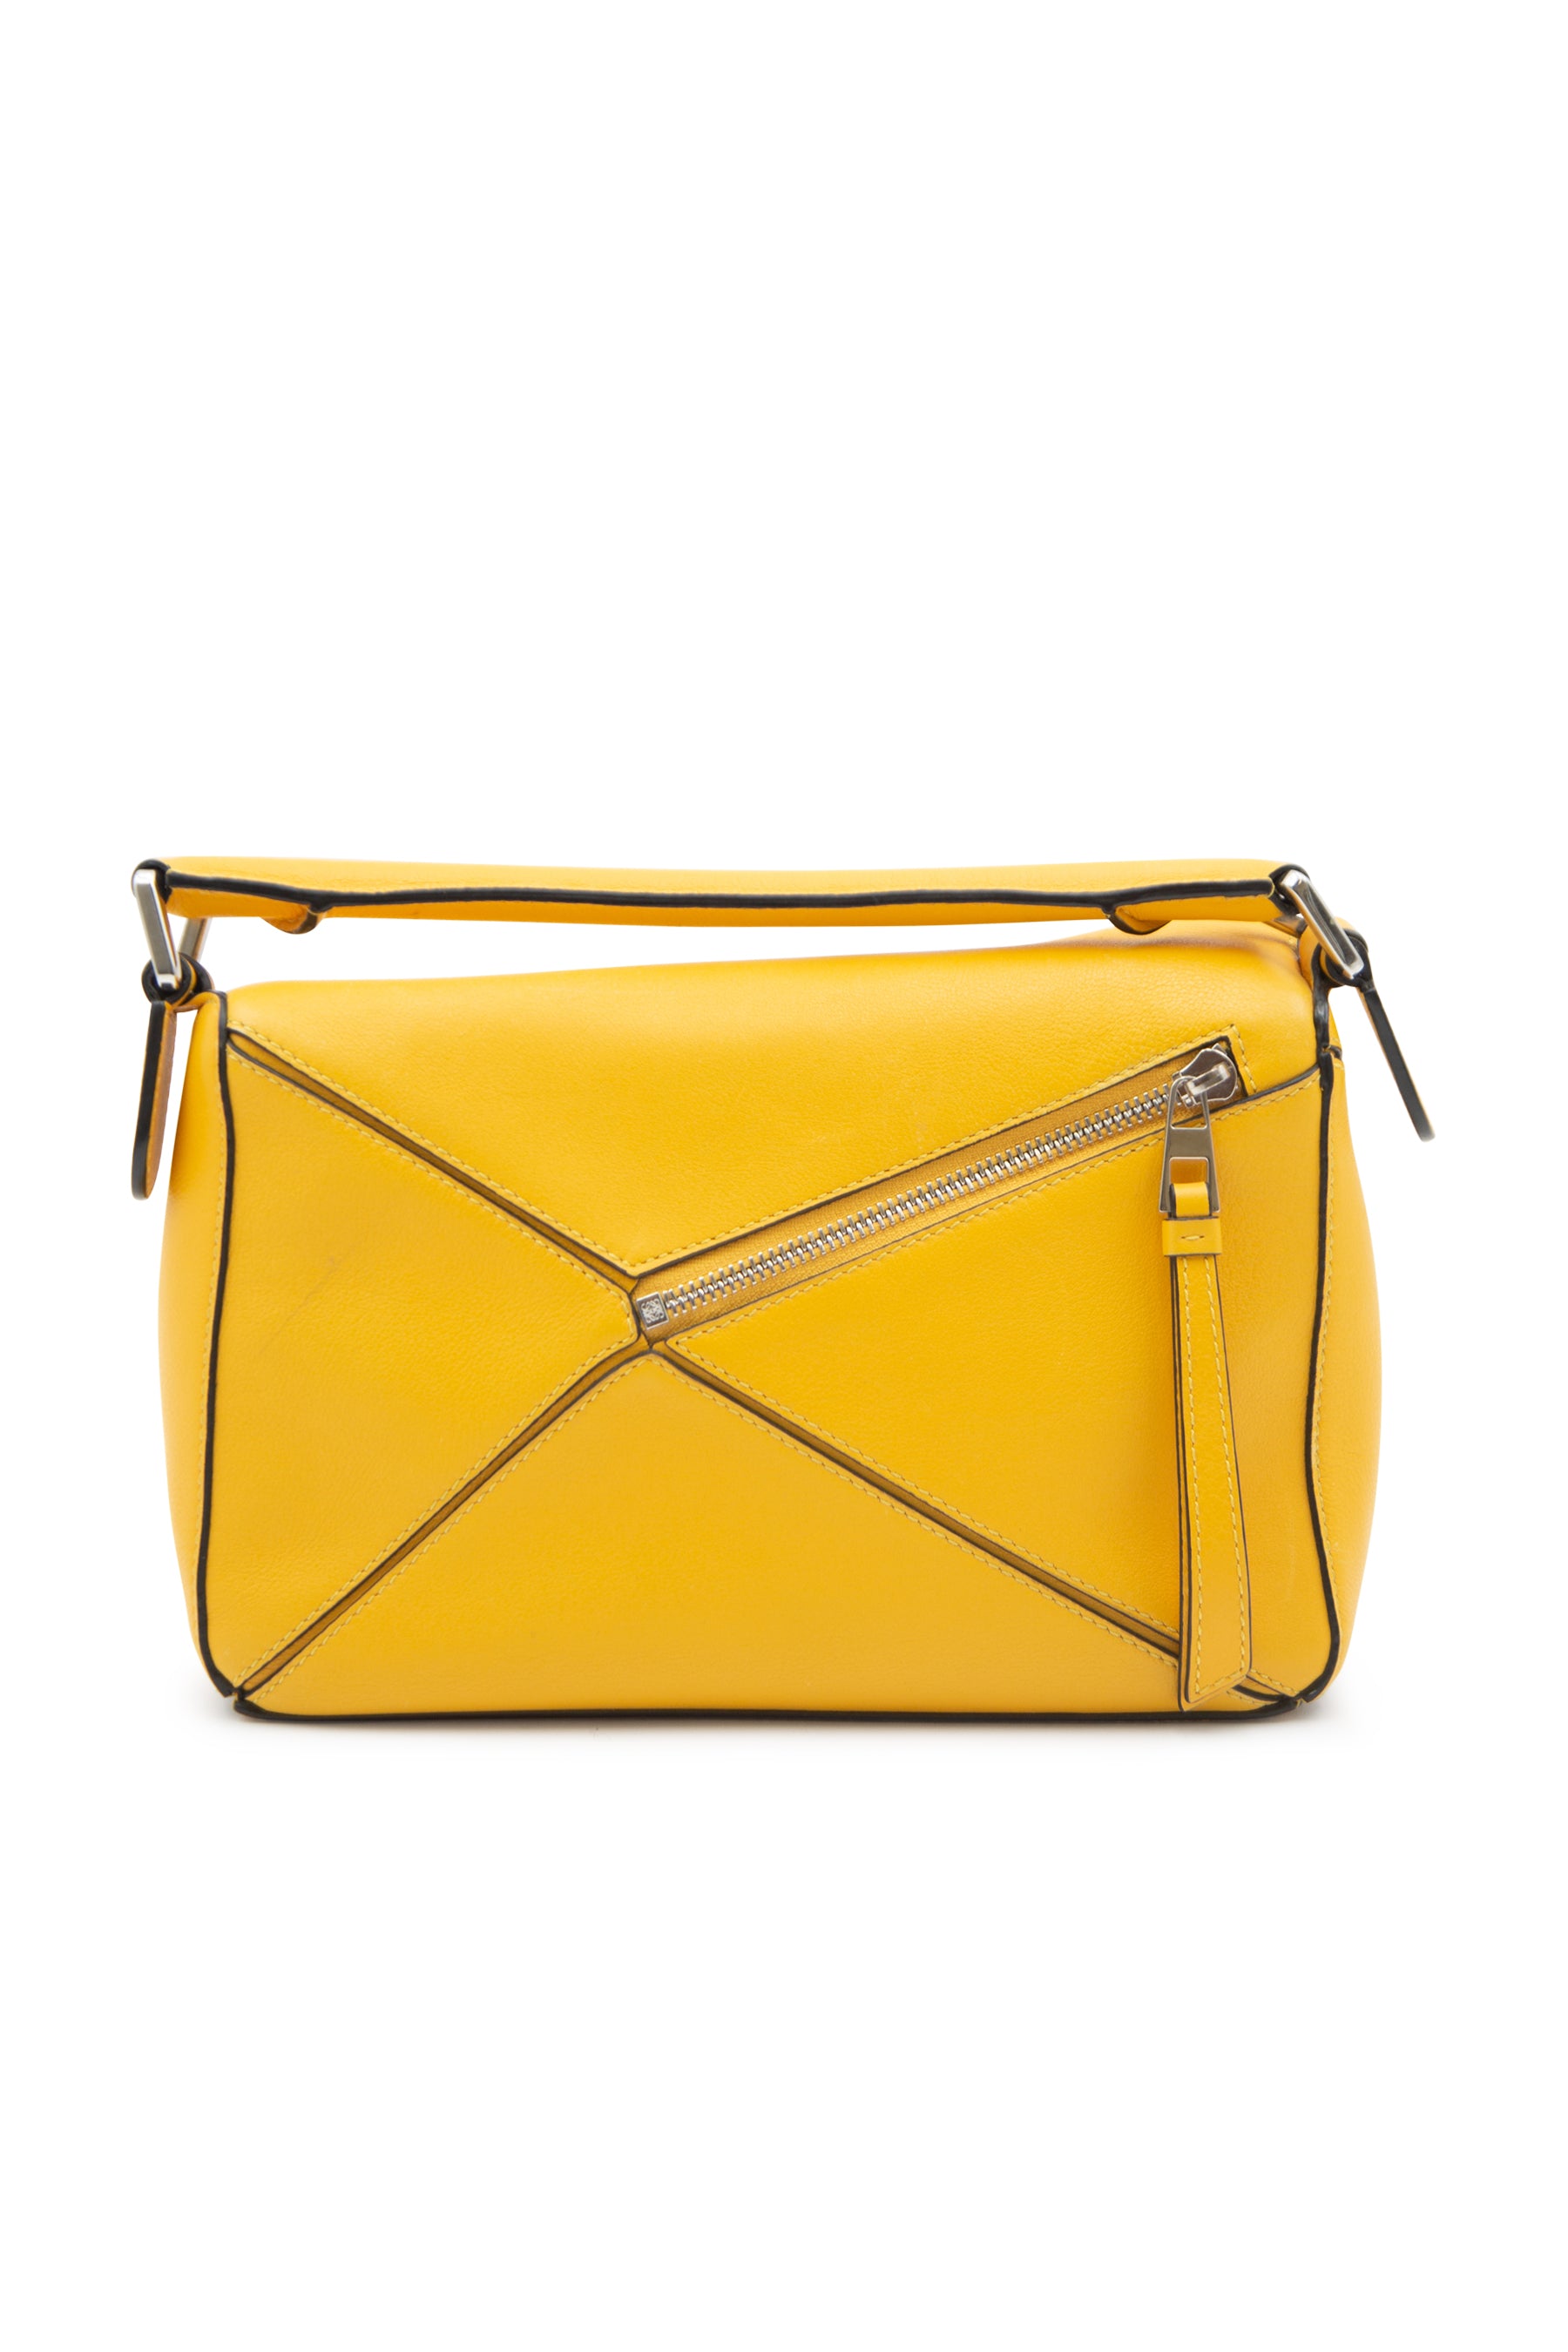 Yellow Loewe a Leather Handbag